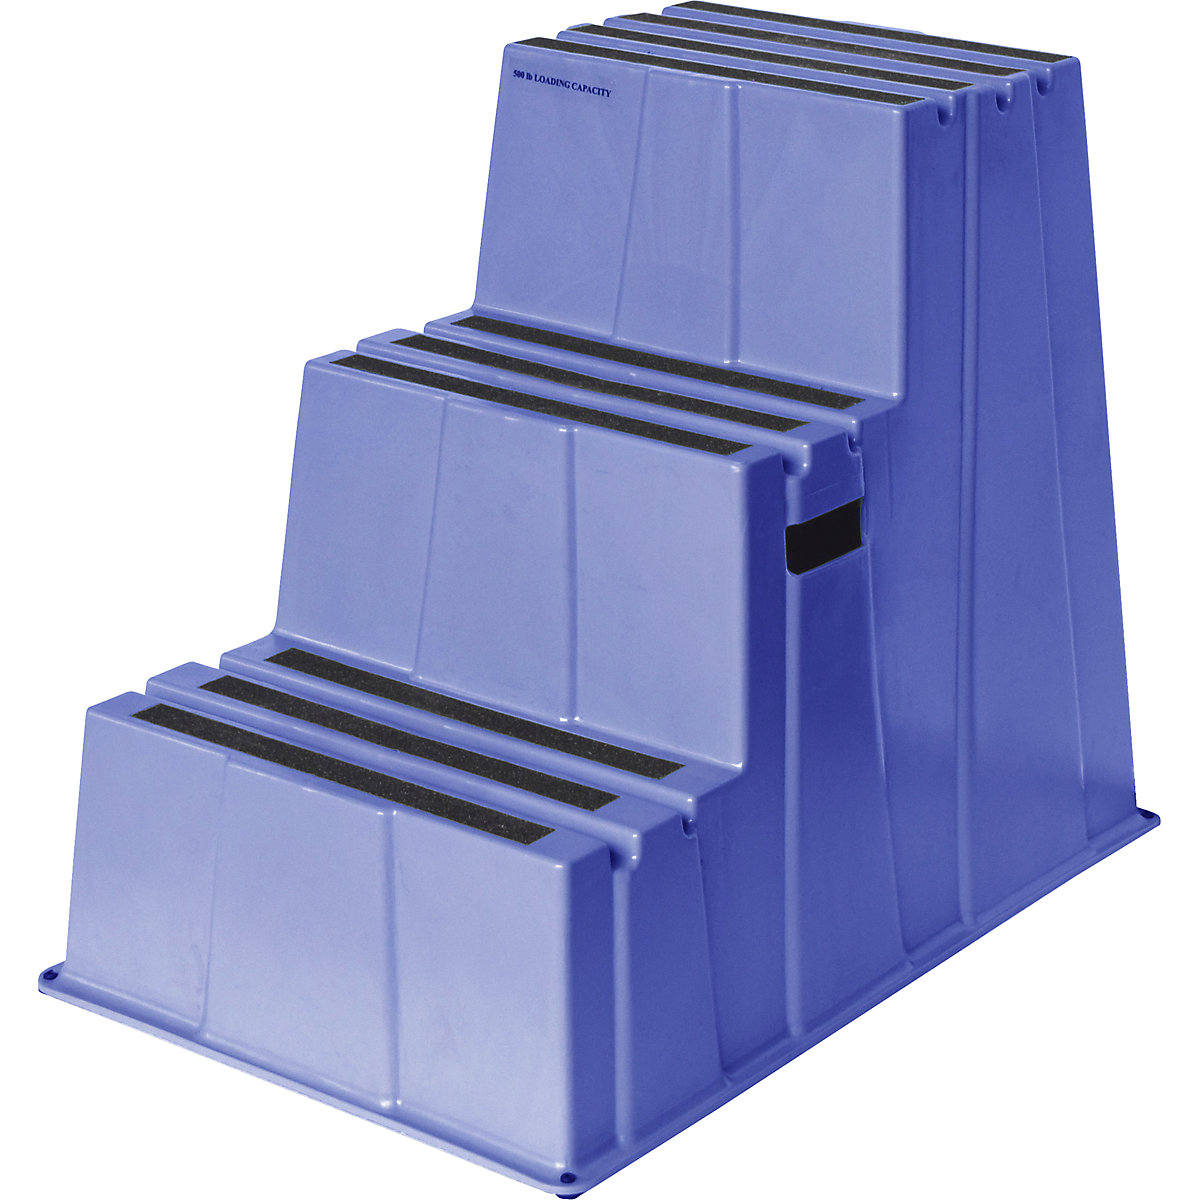 Degrau em plástico antiderrapante – Twinco, capacidade de carga 150 kg, 3 degraus, azul-4